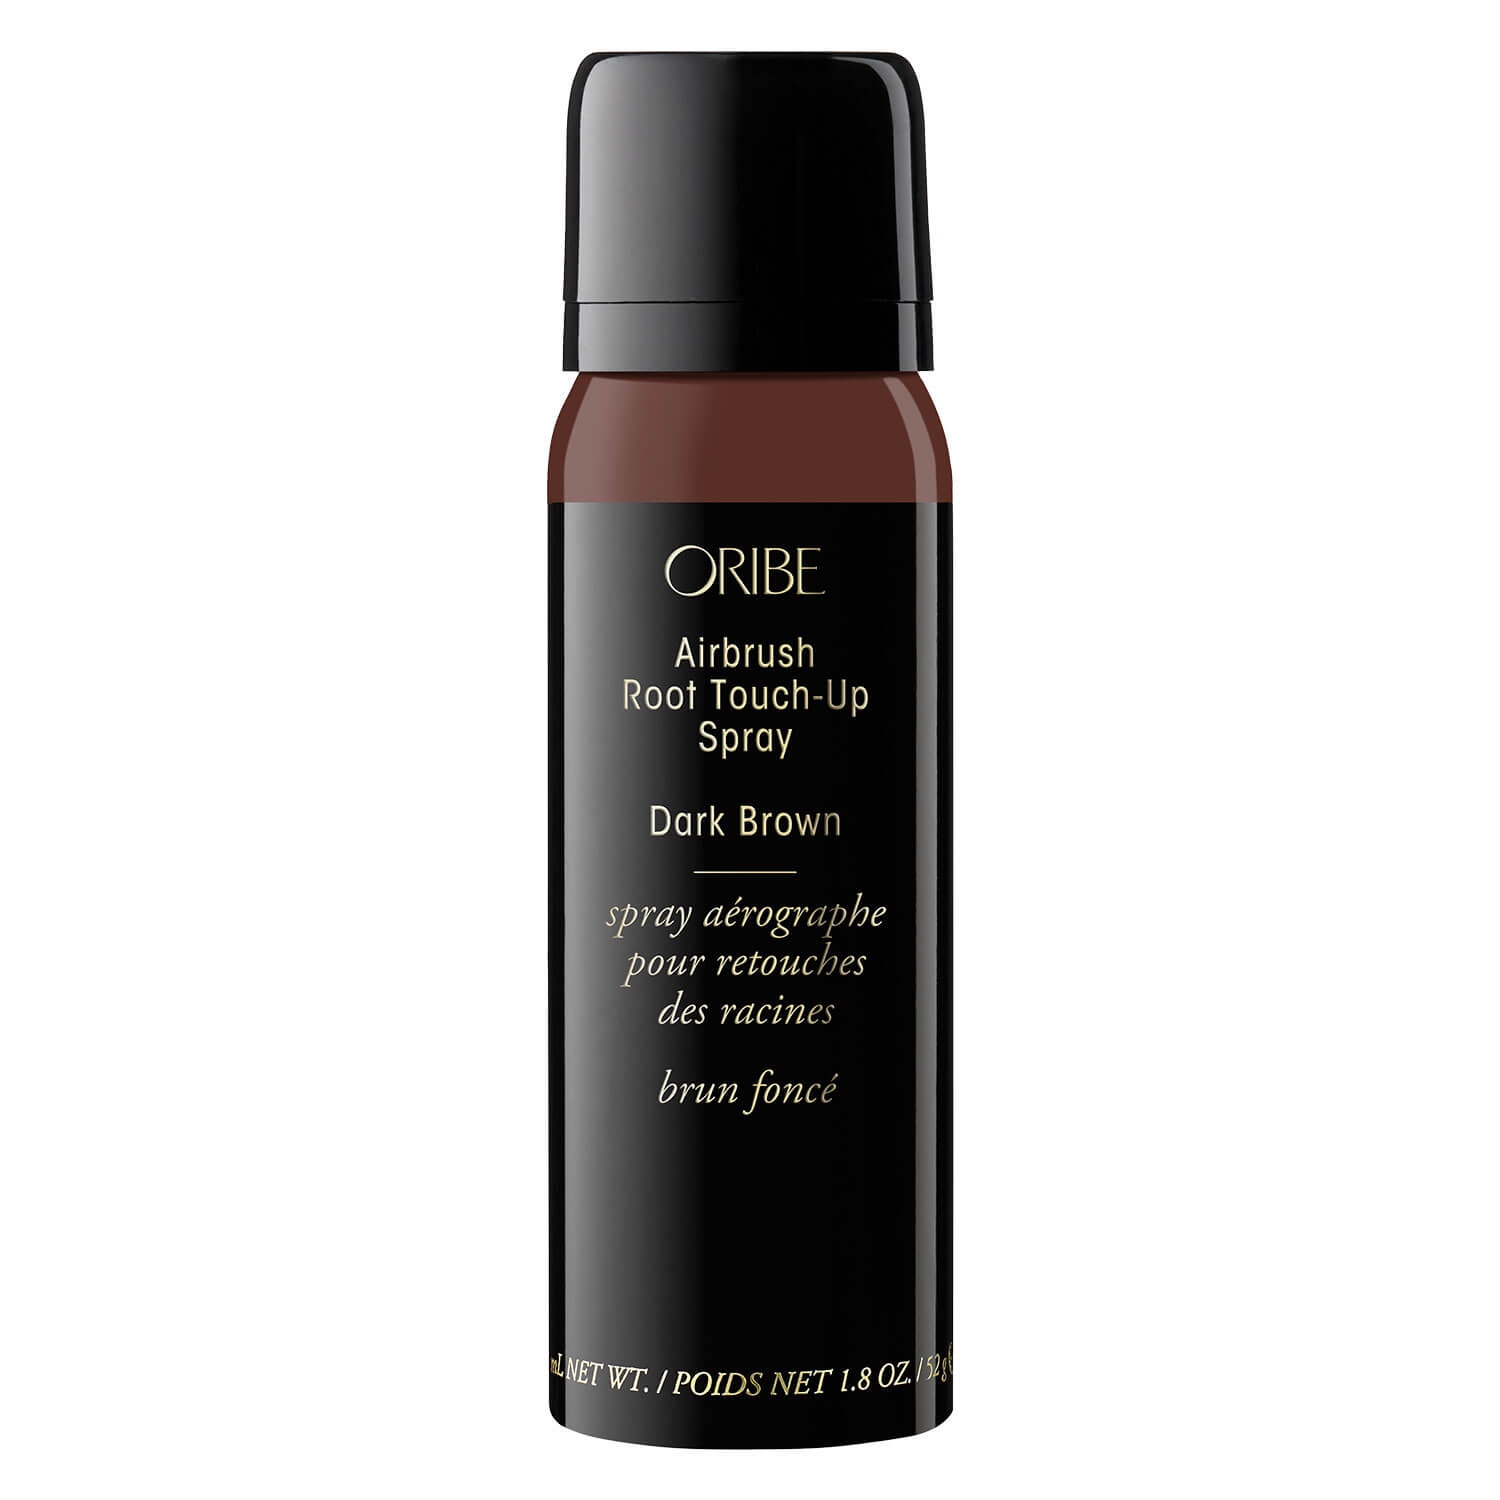 Produktbild von Oribe Style - Airbrush Root Touch-Up Spray Dark Brown